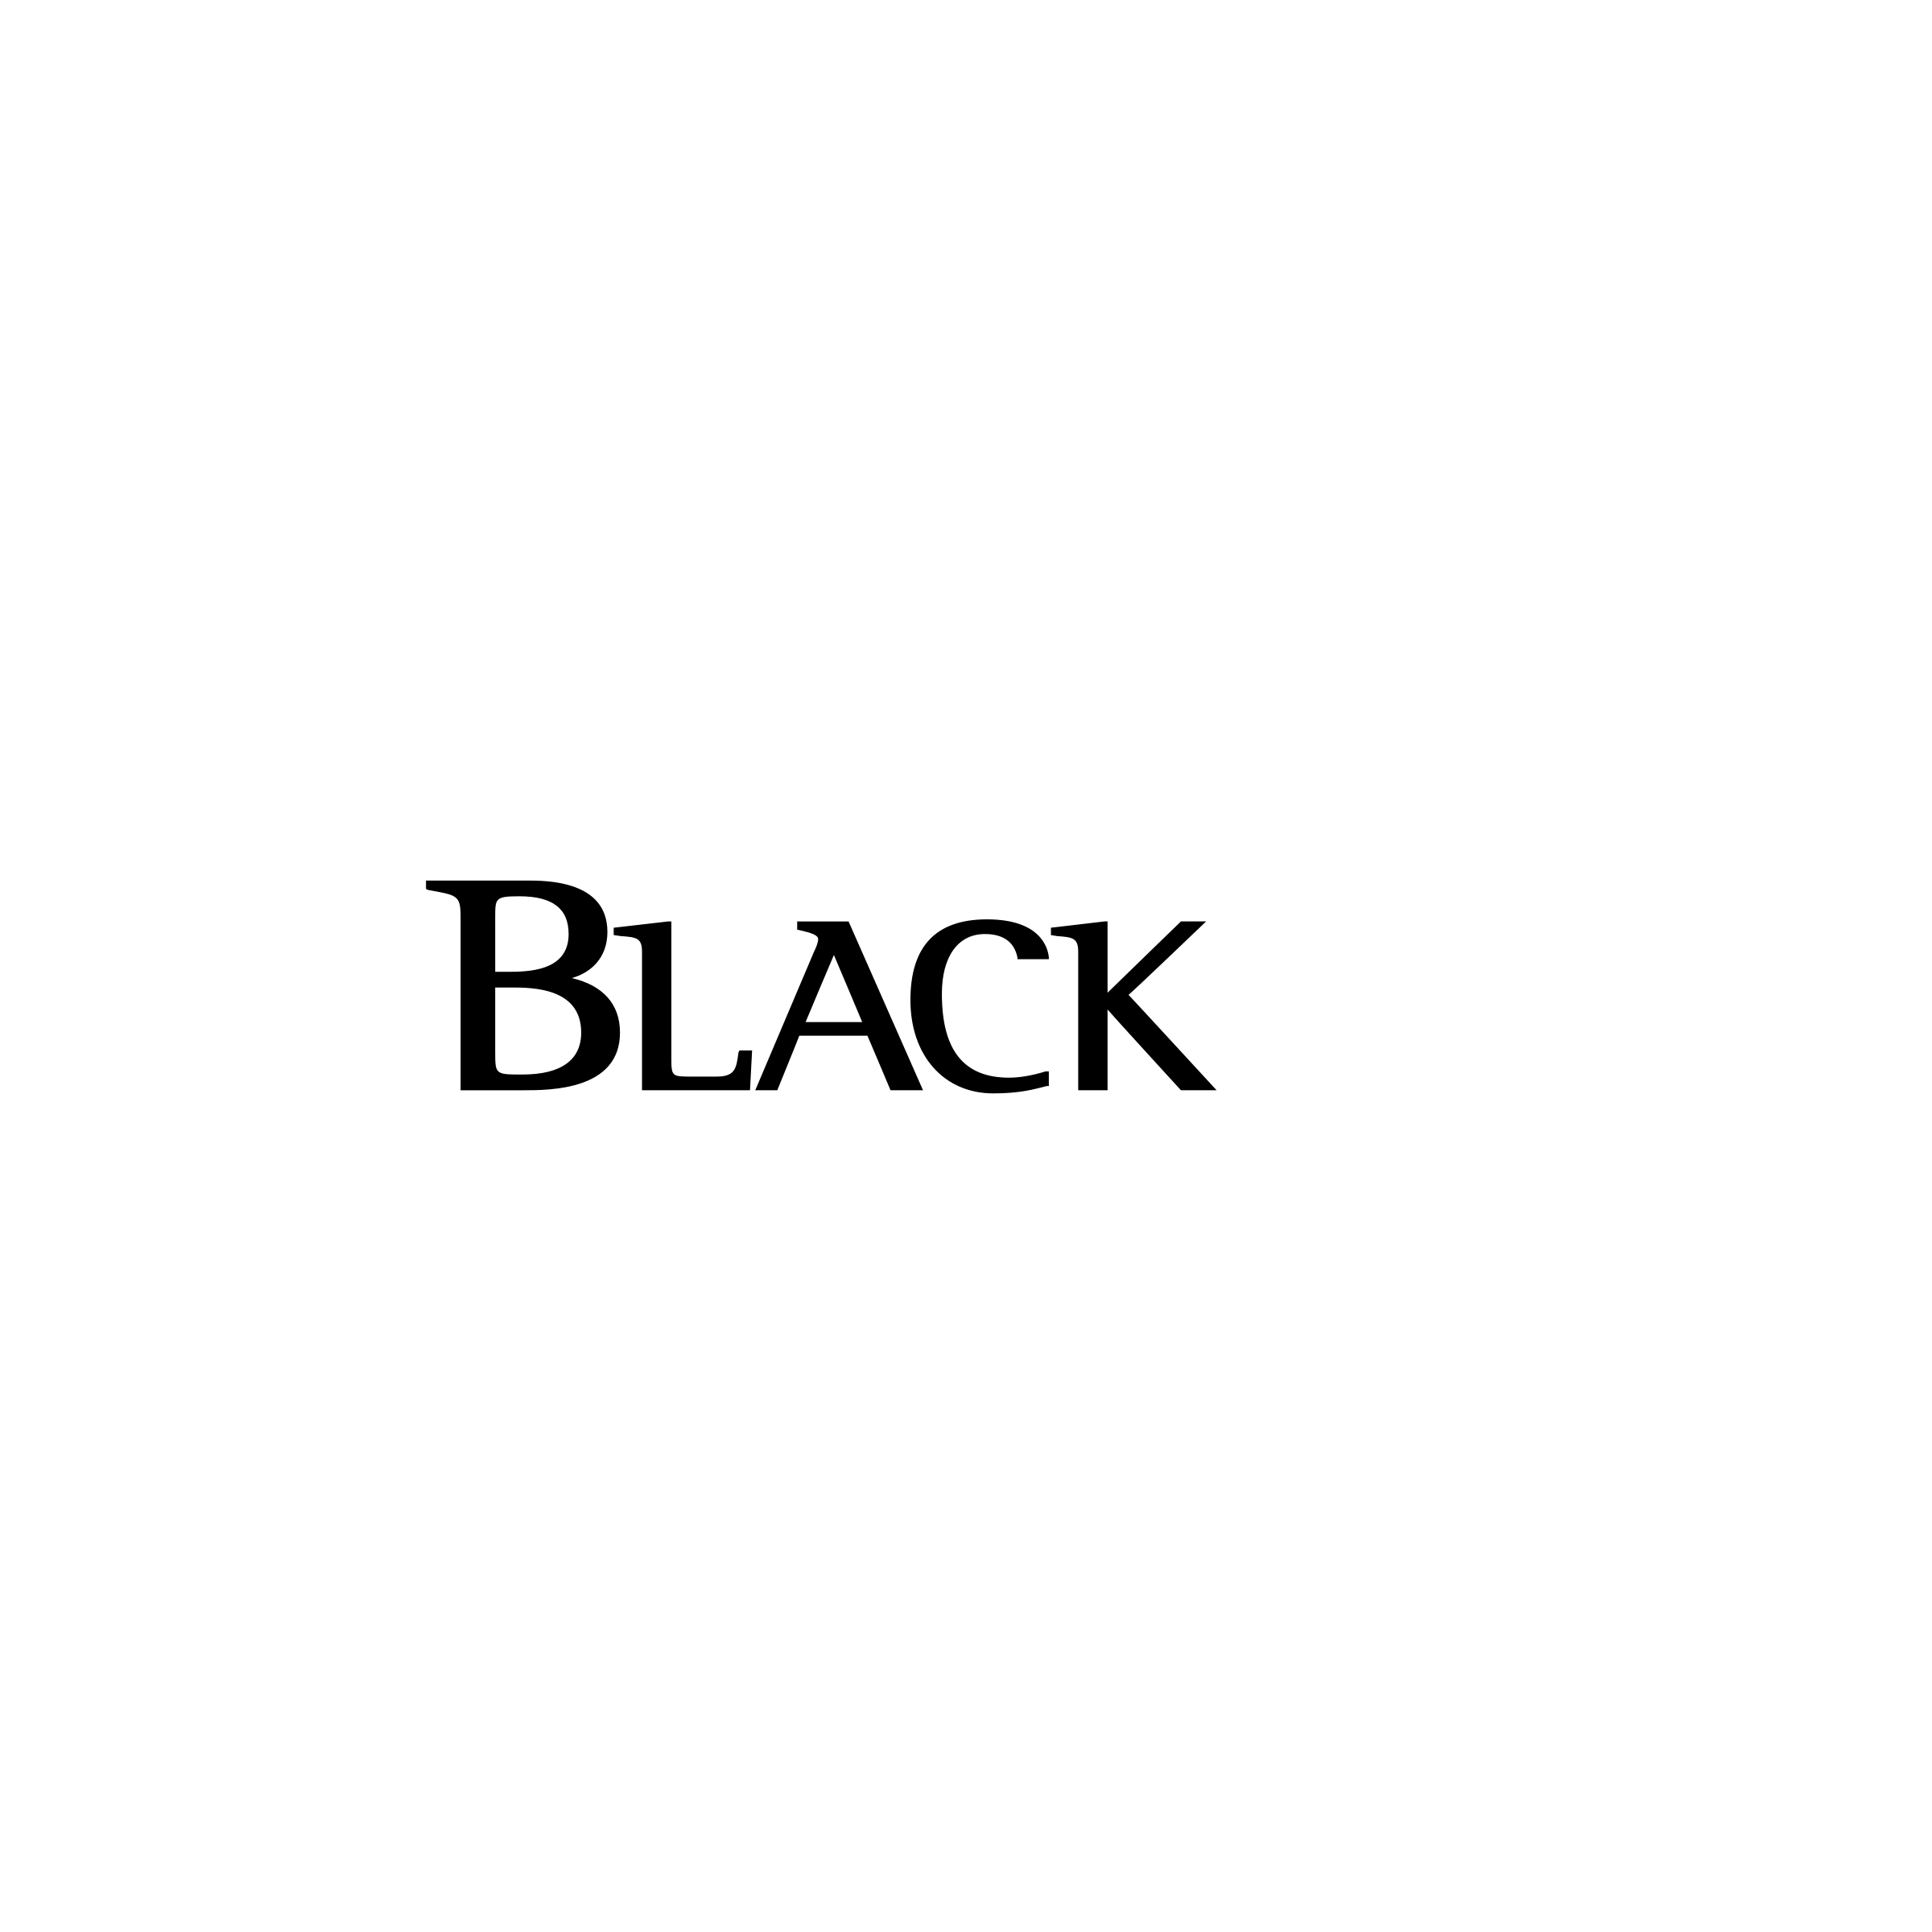 Blackrock Logo - BlackRock Logo PNG Transparent & SVG Vector - Freebie Supply